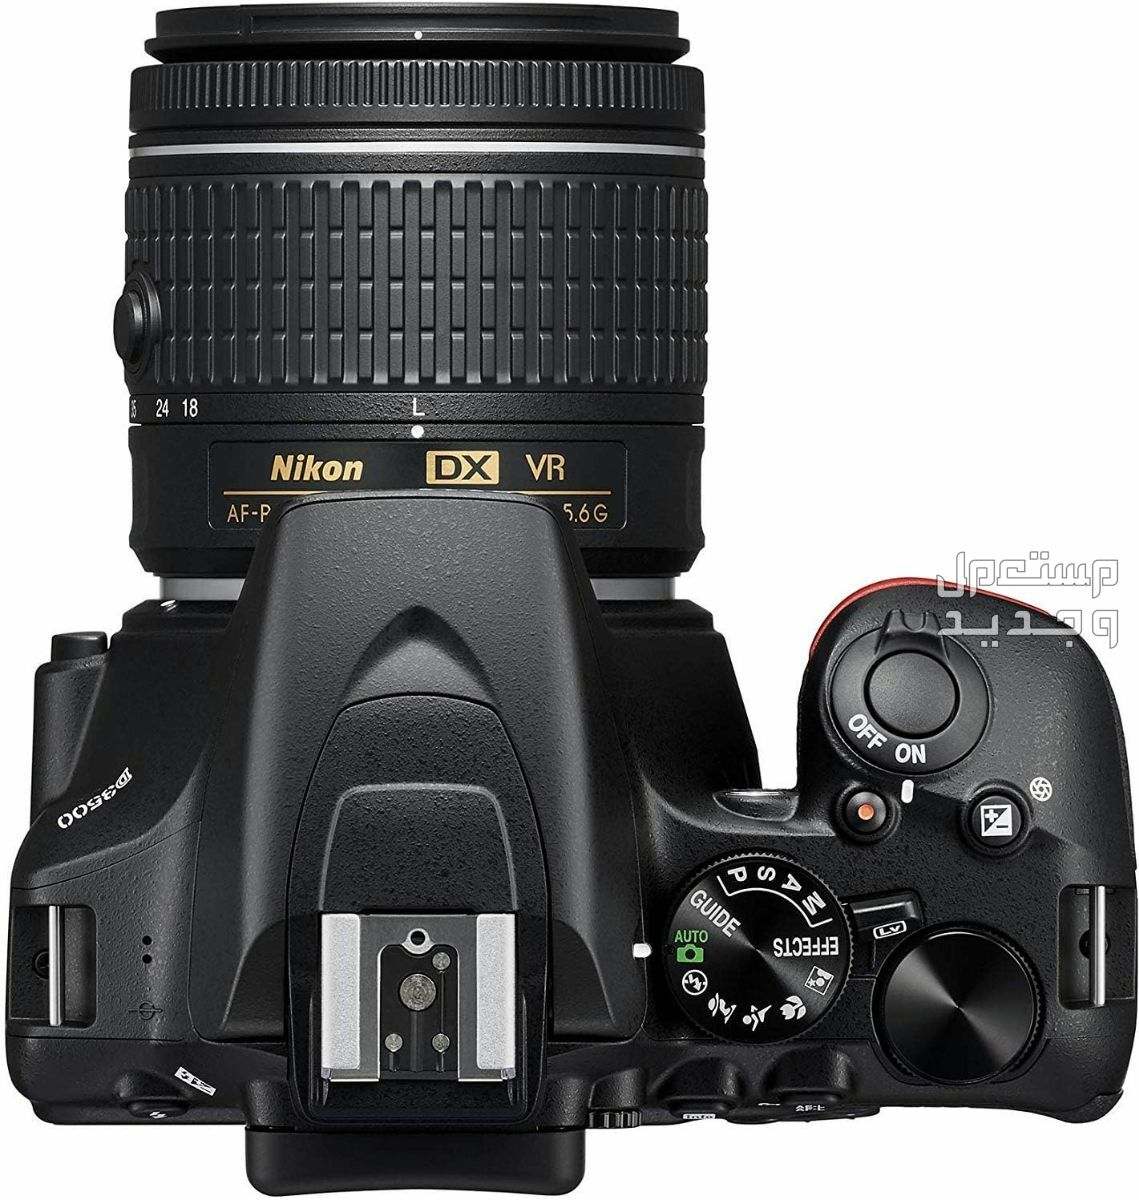 10 كاميرات تصوير ماركات عالمية بأسعار رخيصة في سوريا سعر كاميرا Nikon D3500